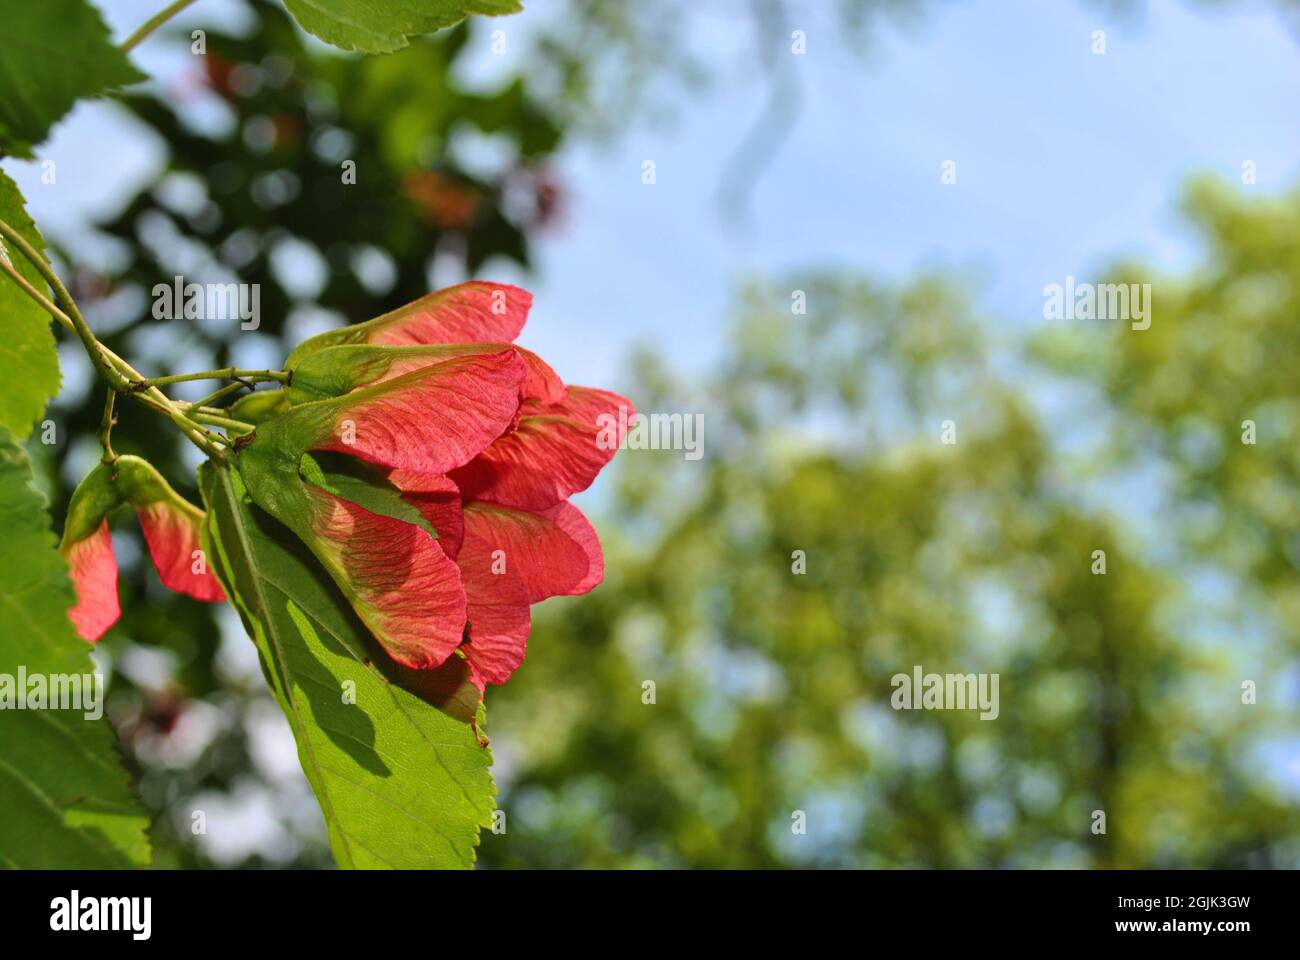 Bärtiger Ahorn (Acer Barbinerve) leuchtend rote Samen samaras Nahaufnahme Detail, weiche verschwommene grüne Blätter und blauer Himmel Hintergrund Stockfoto